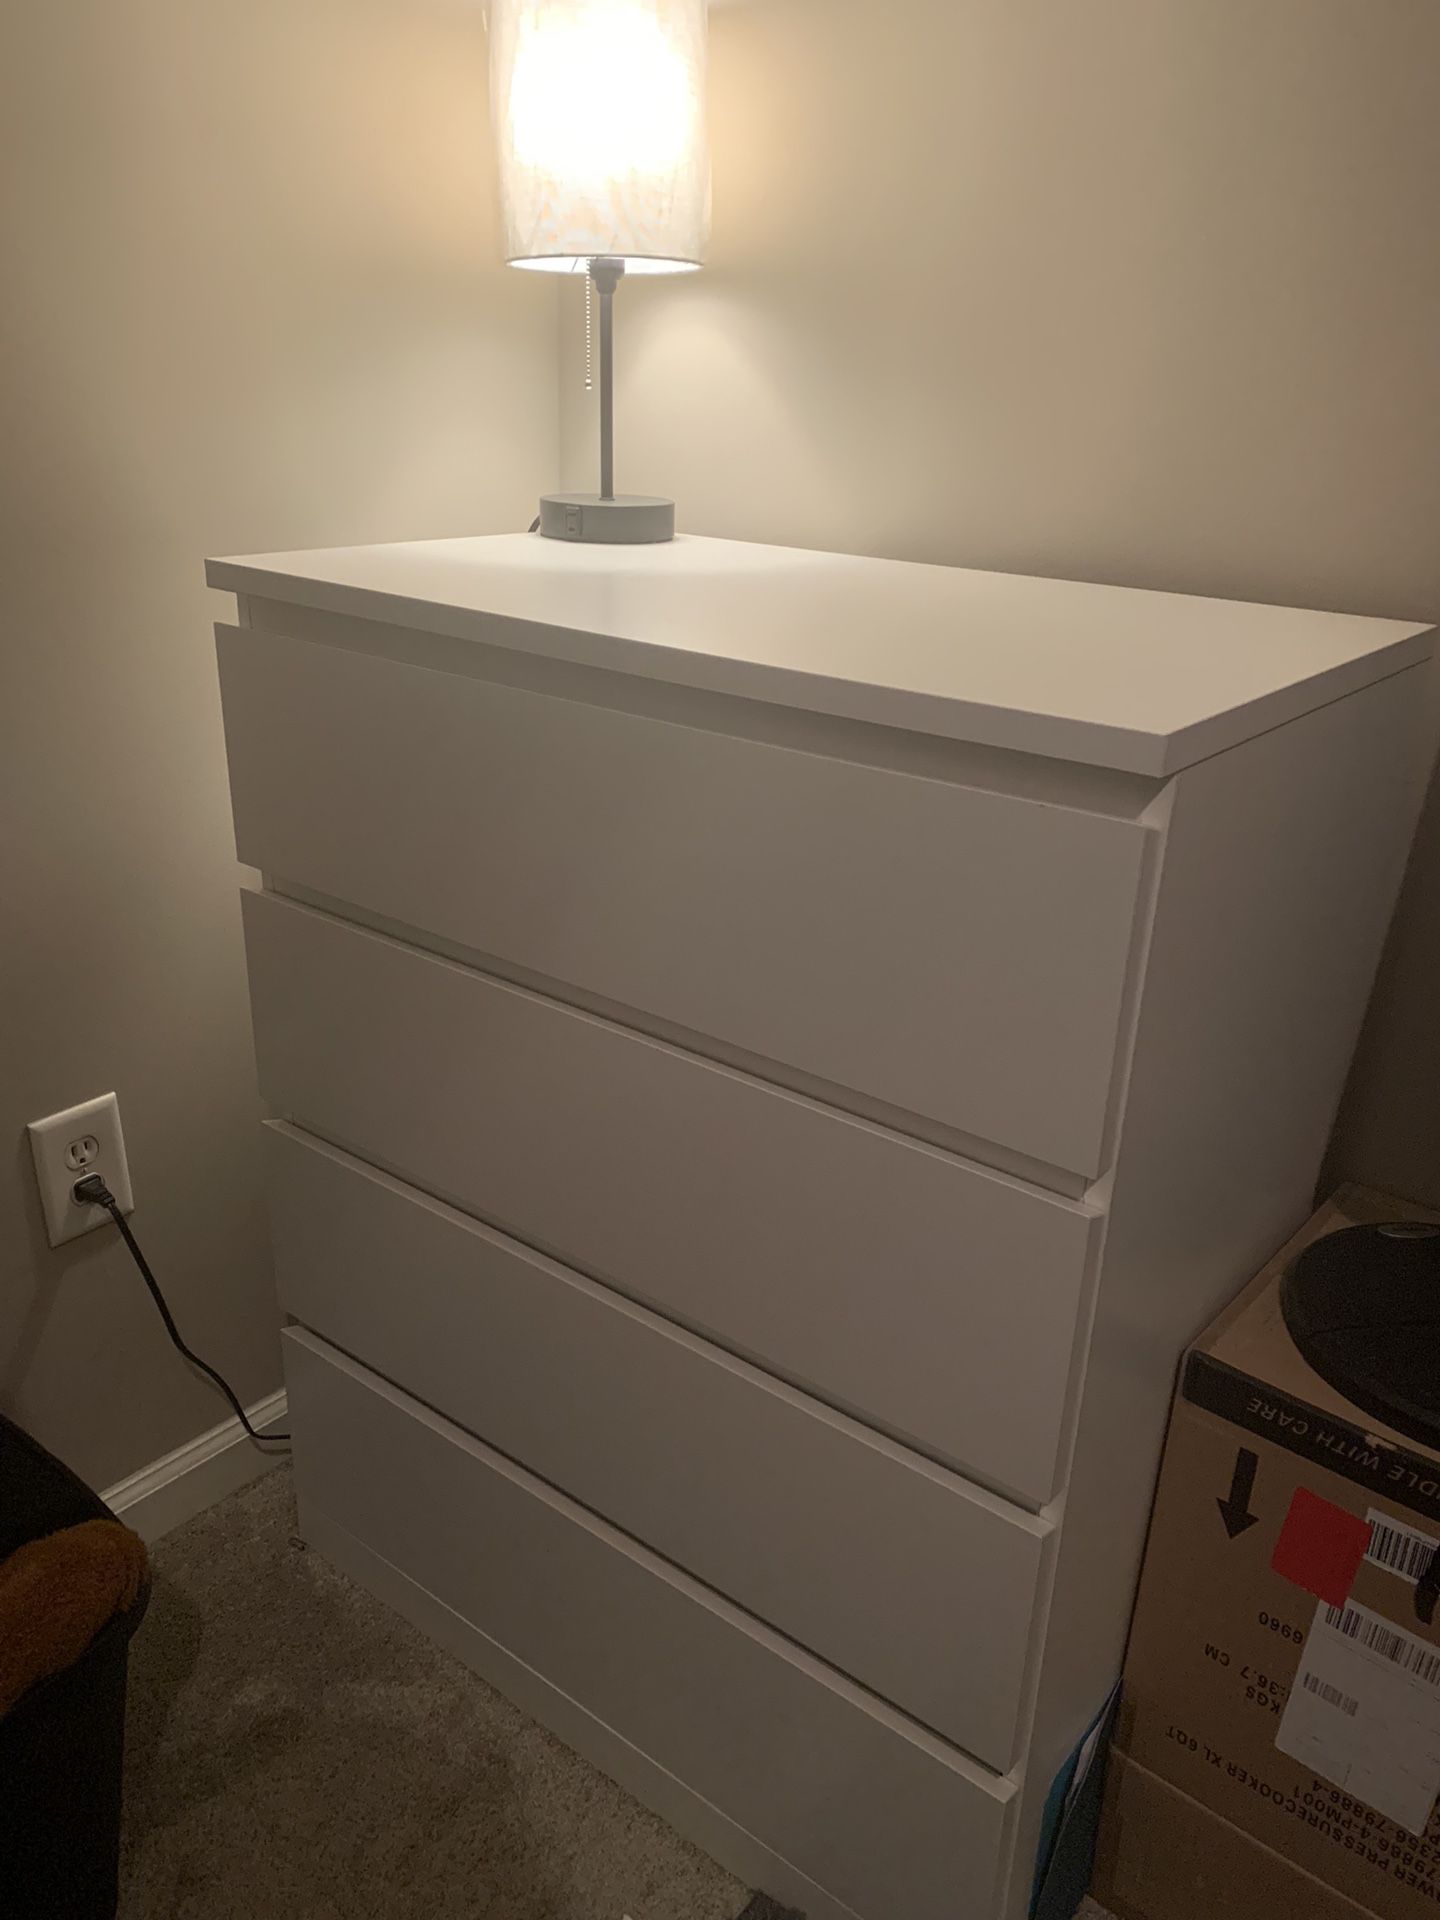 White Bedroom Dresser - 4 Drawer